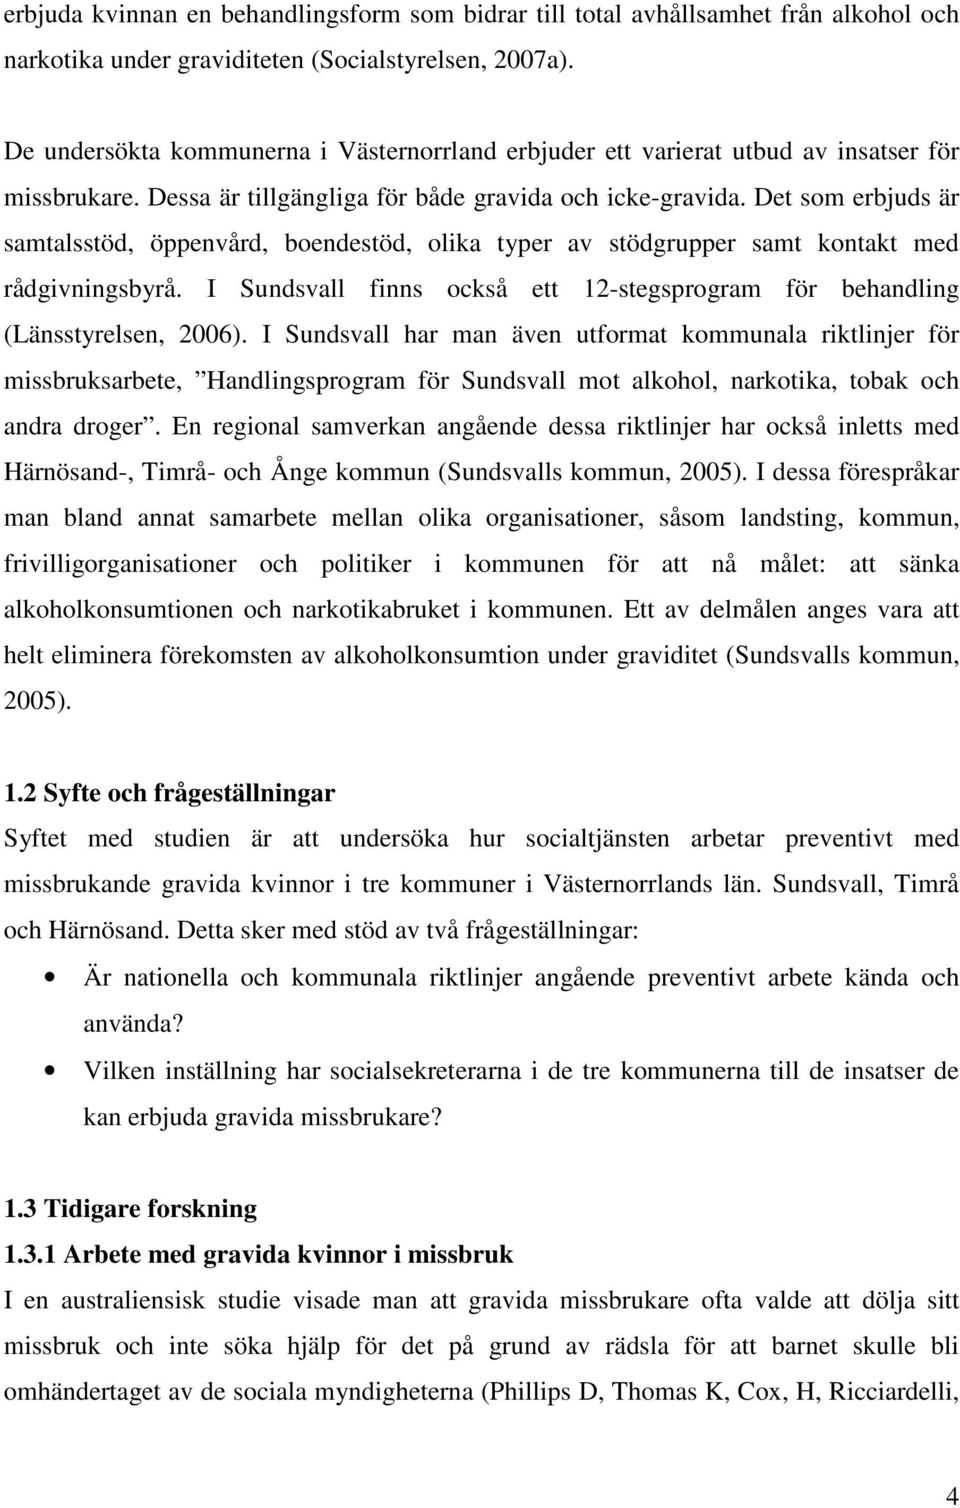 Det som erbjuds är samtalsstöd, öppenvård, boendestöd, olika typer av stödgrupper samt kontakt med rådgivningsbyrå. I Sundsvall finns också ett 12-stegsprogram för behandling (Länsstyrelsen, 2006).